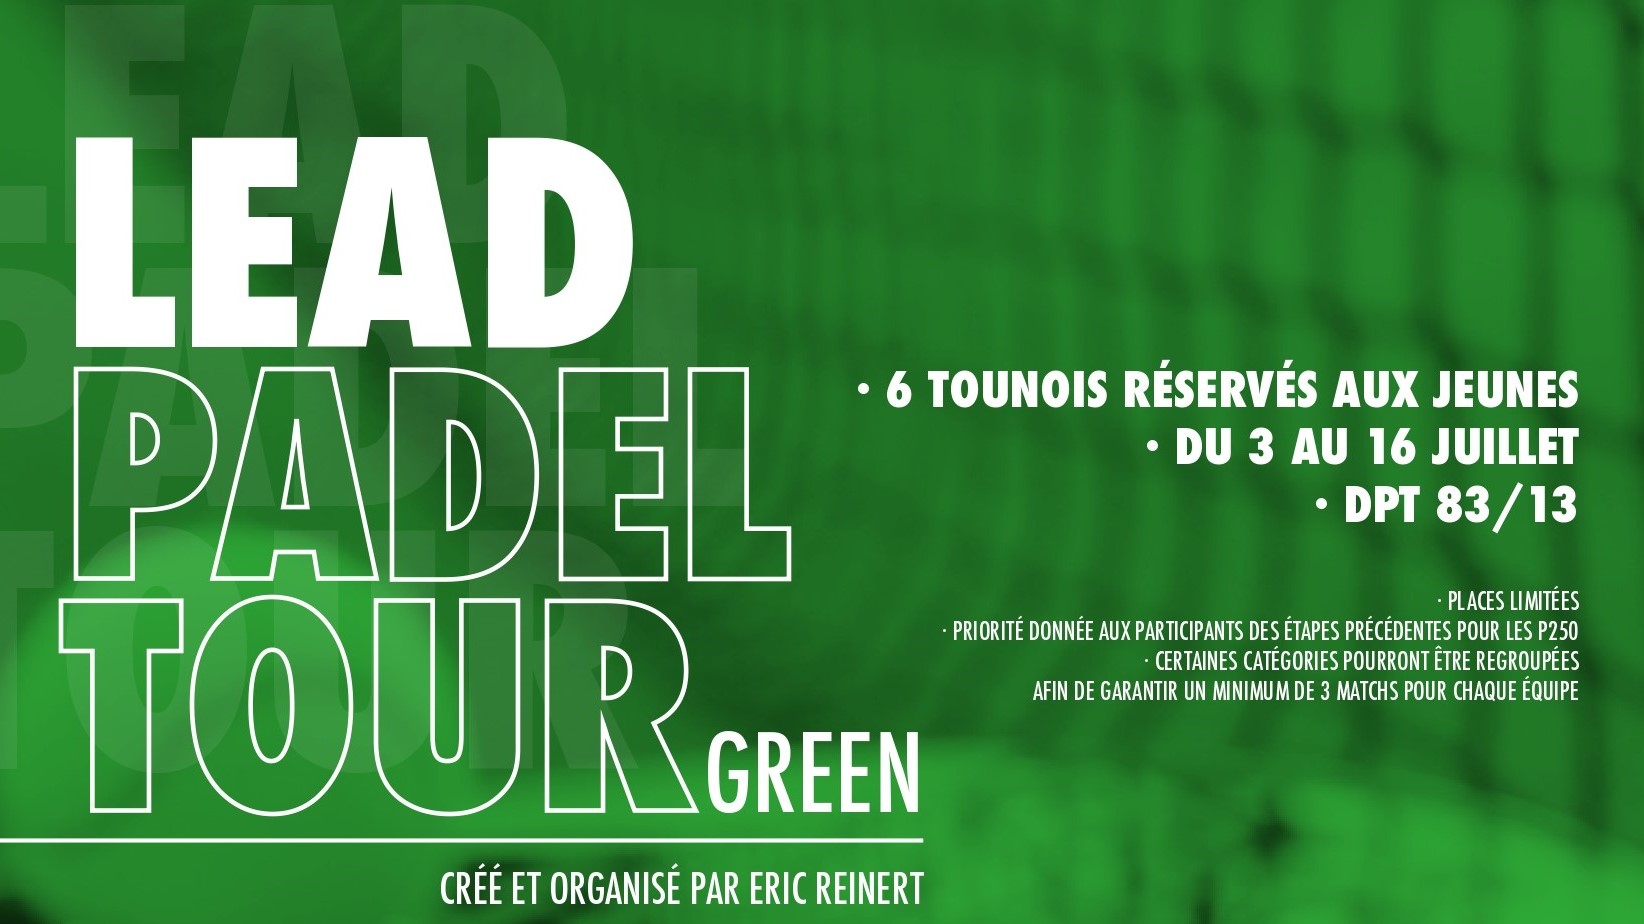 Lead Padel Tour, et kredsløb for unge!